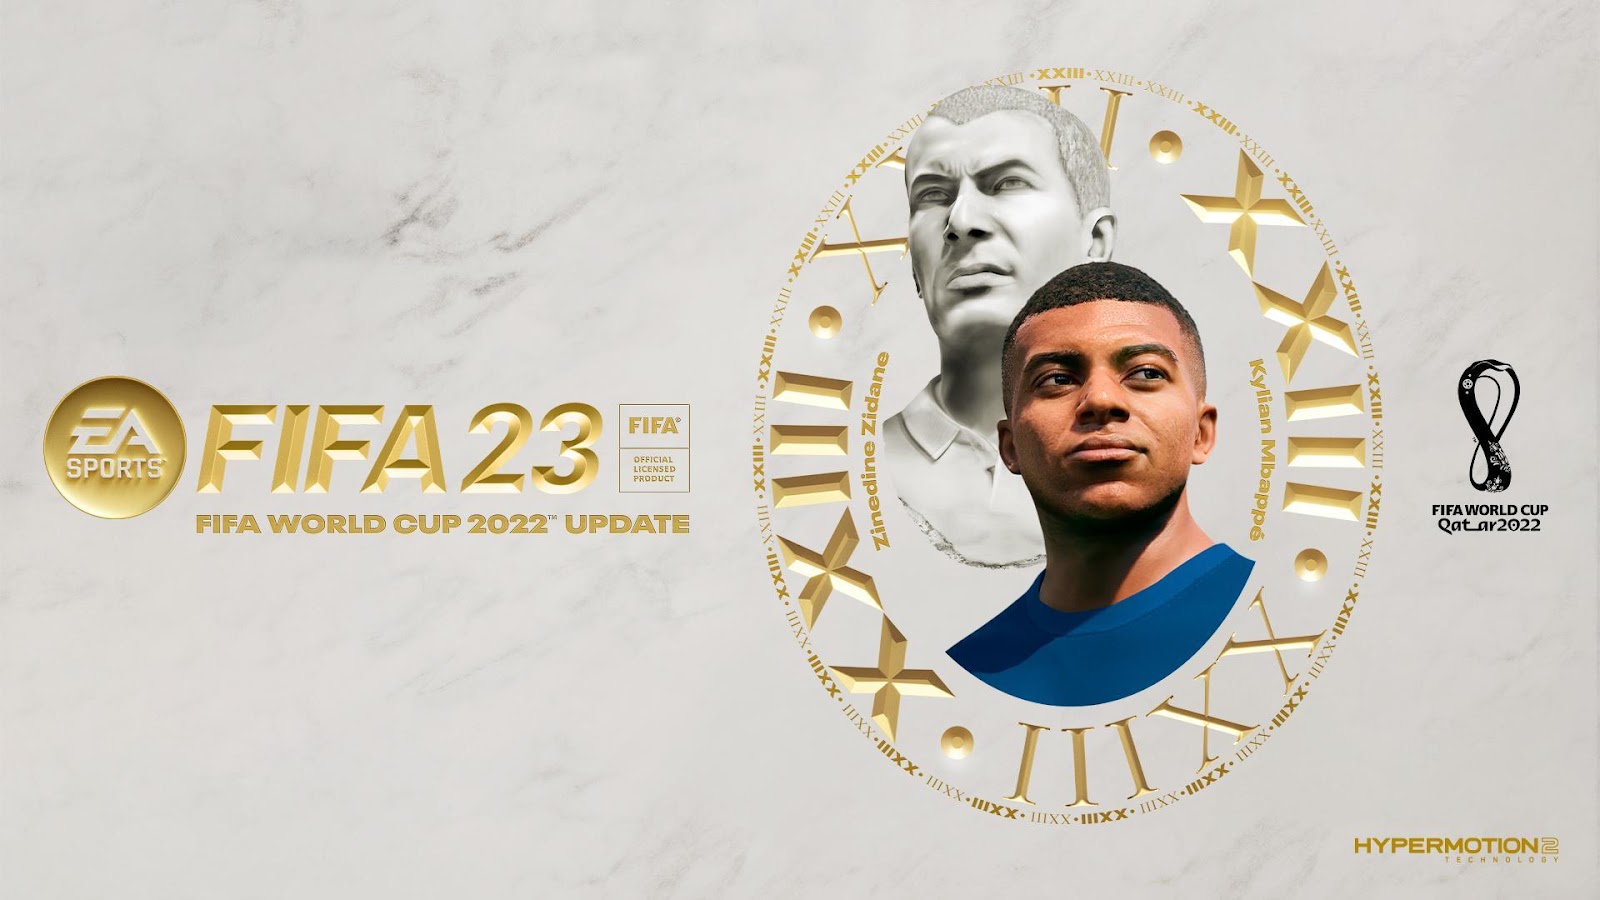 FIFA Mobile - Rumo à Final - Site oficial da EA SPORTS